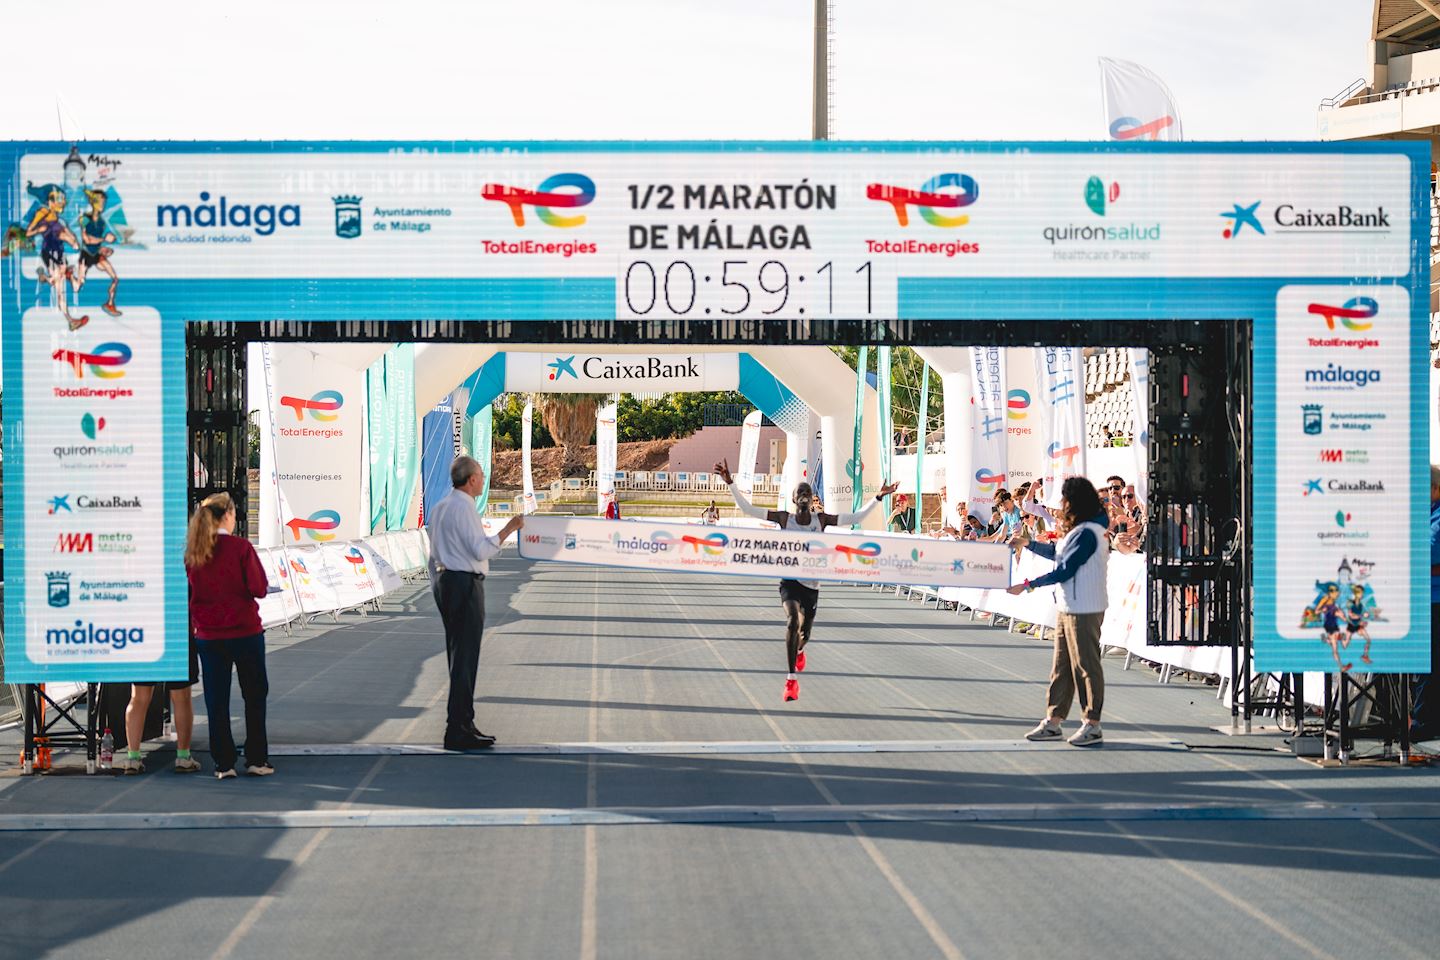 media maraton ciudad de malaga